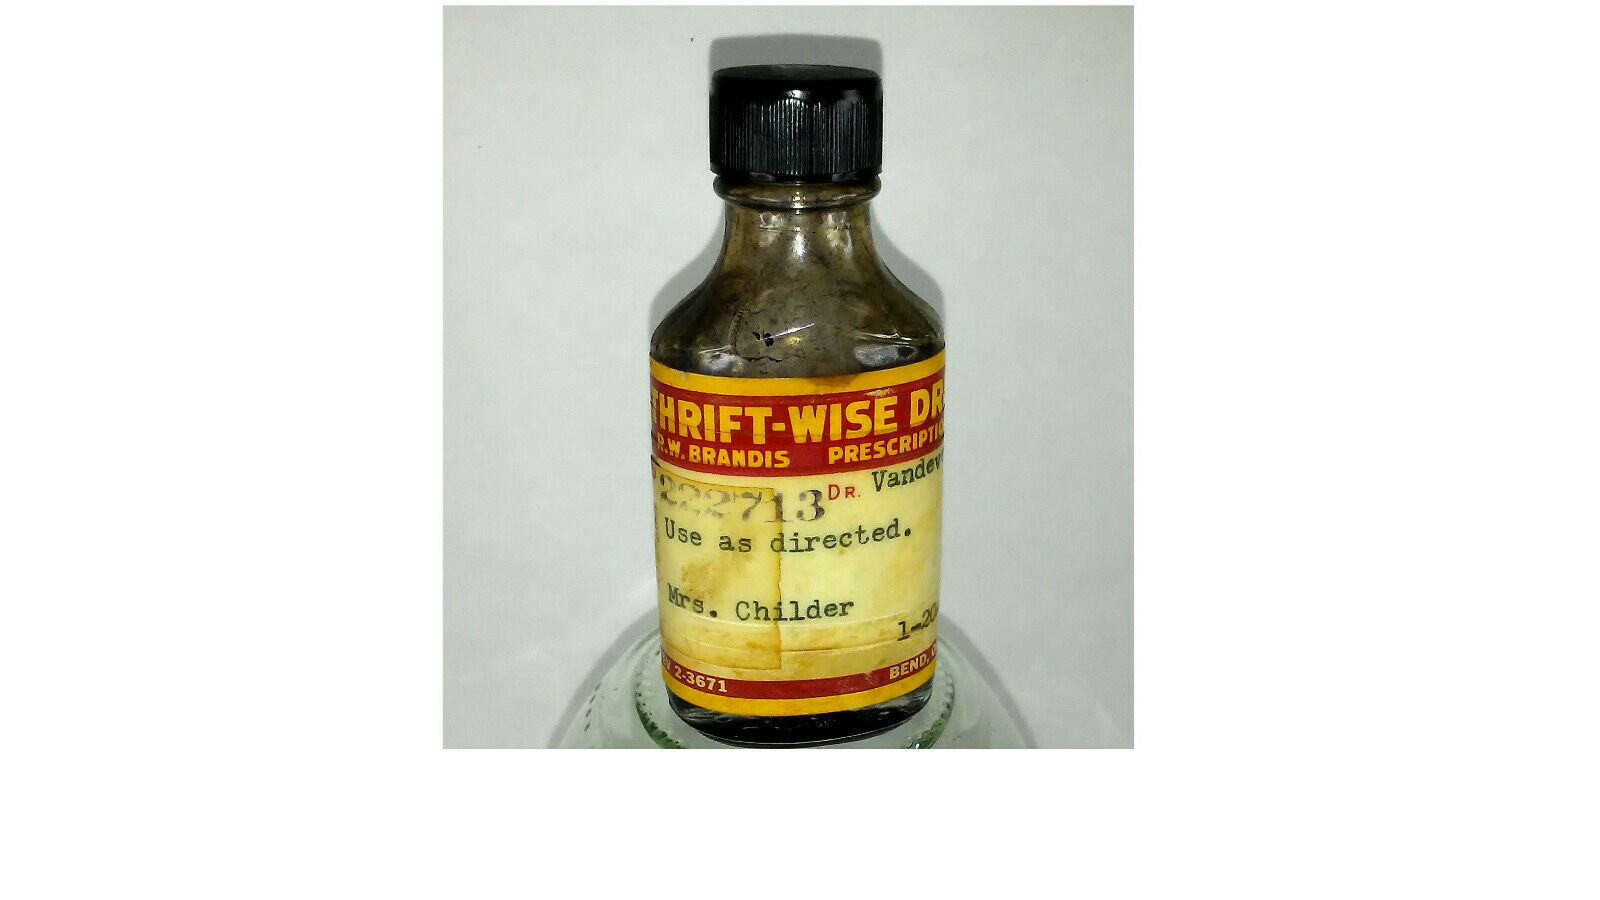 Vintage / Paper Lable Oregon Medicine Bottle / Thrift-wise-drug / Bend, Or.ore.